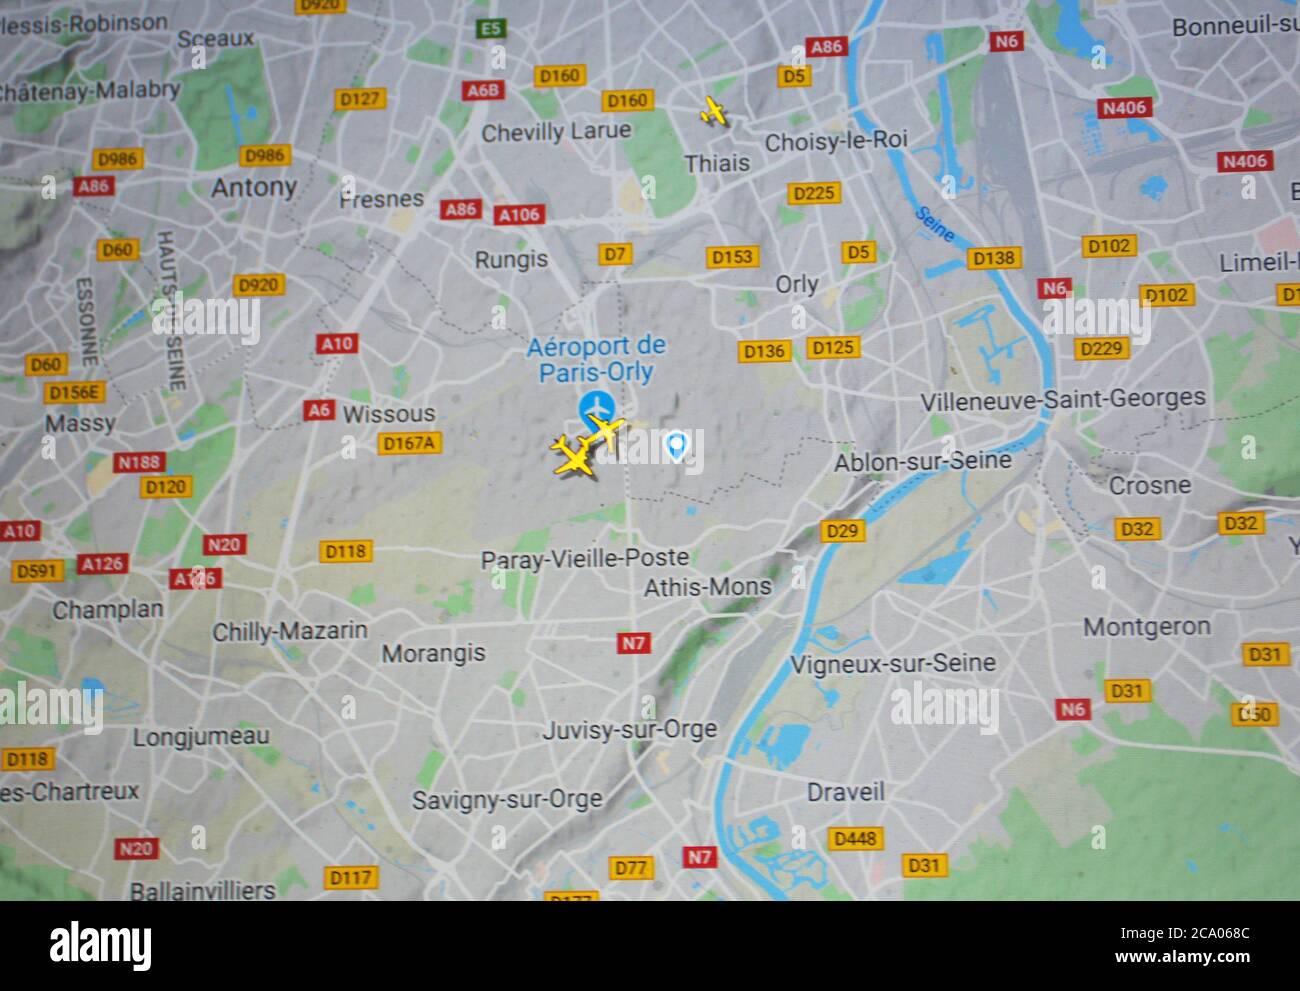 Trafic aérien sur l'aéroport Paris-Orly (03 août 2020, UTC13.47), sur Internet avec le site Flightracar 24, pendant la pandémie du coronavirus Banque D'Images